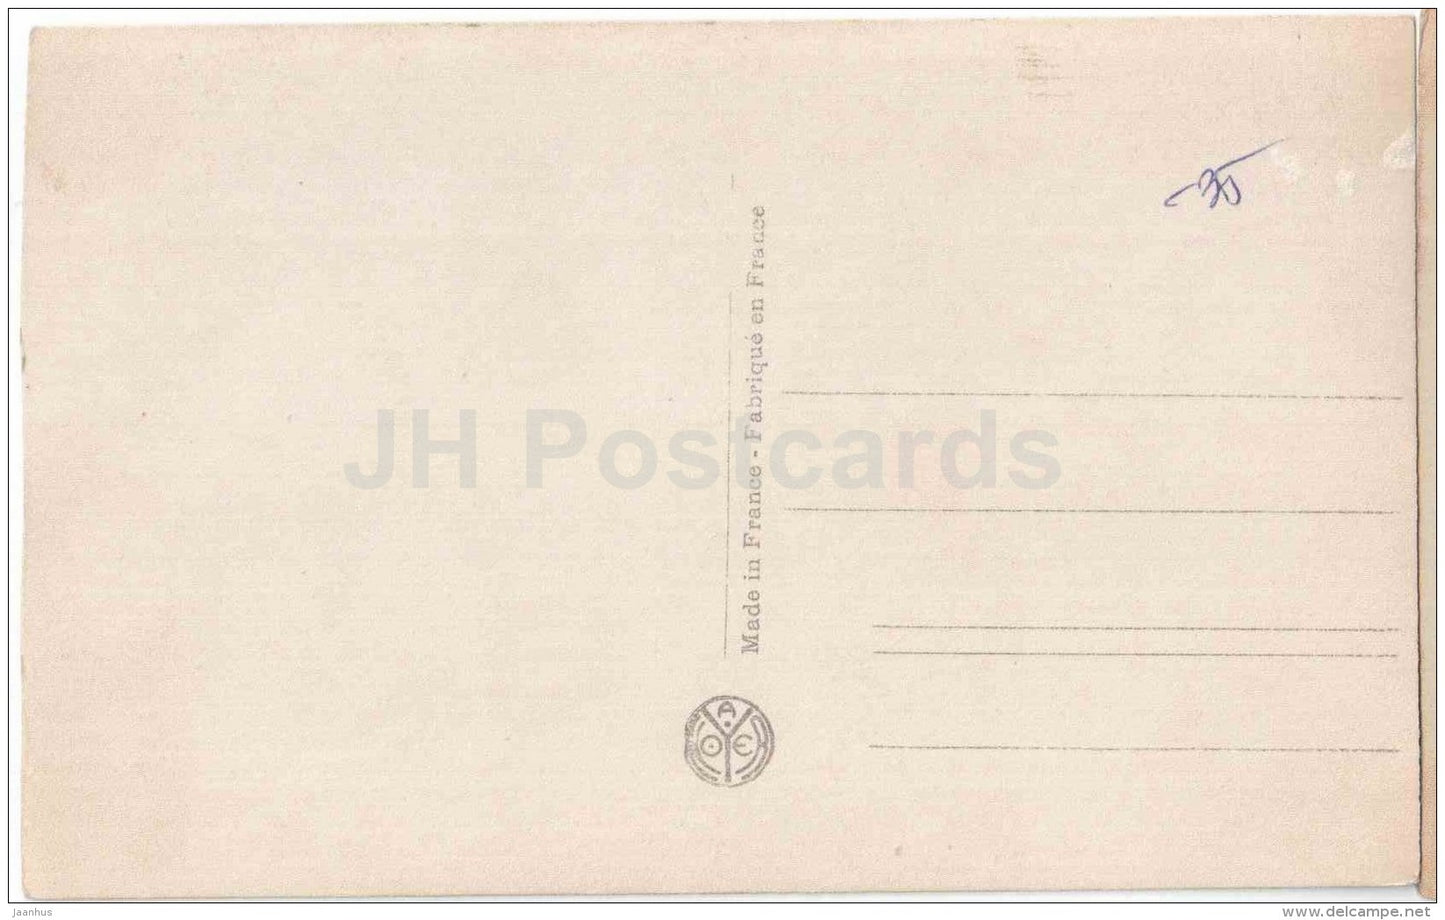 Rod Larocque - Les Vedettes de Cinema - movie actor - Film Paramount AN Paris - 107 - old postcard - unused - JH Postcards